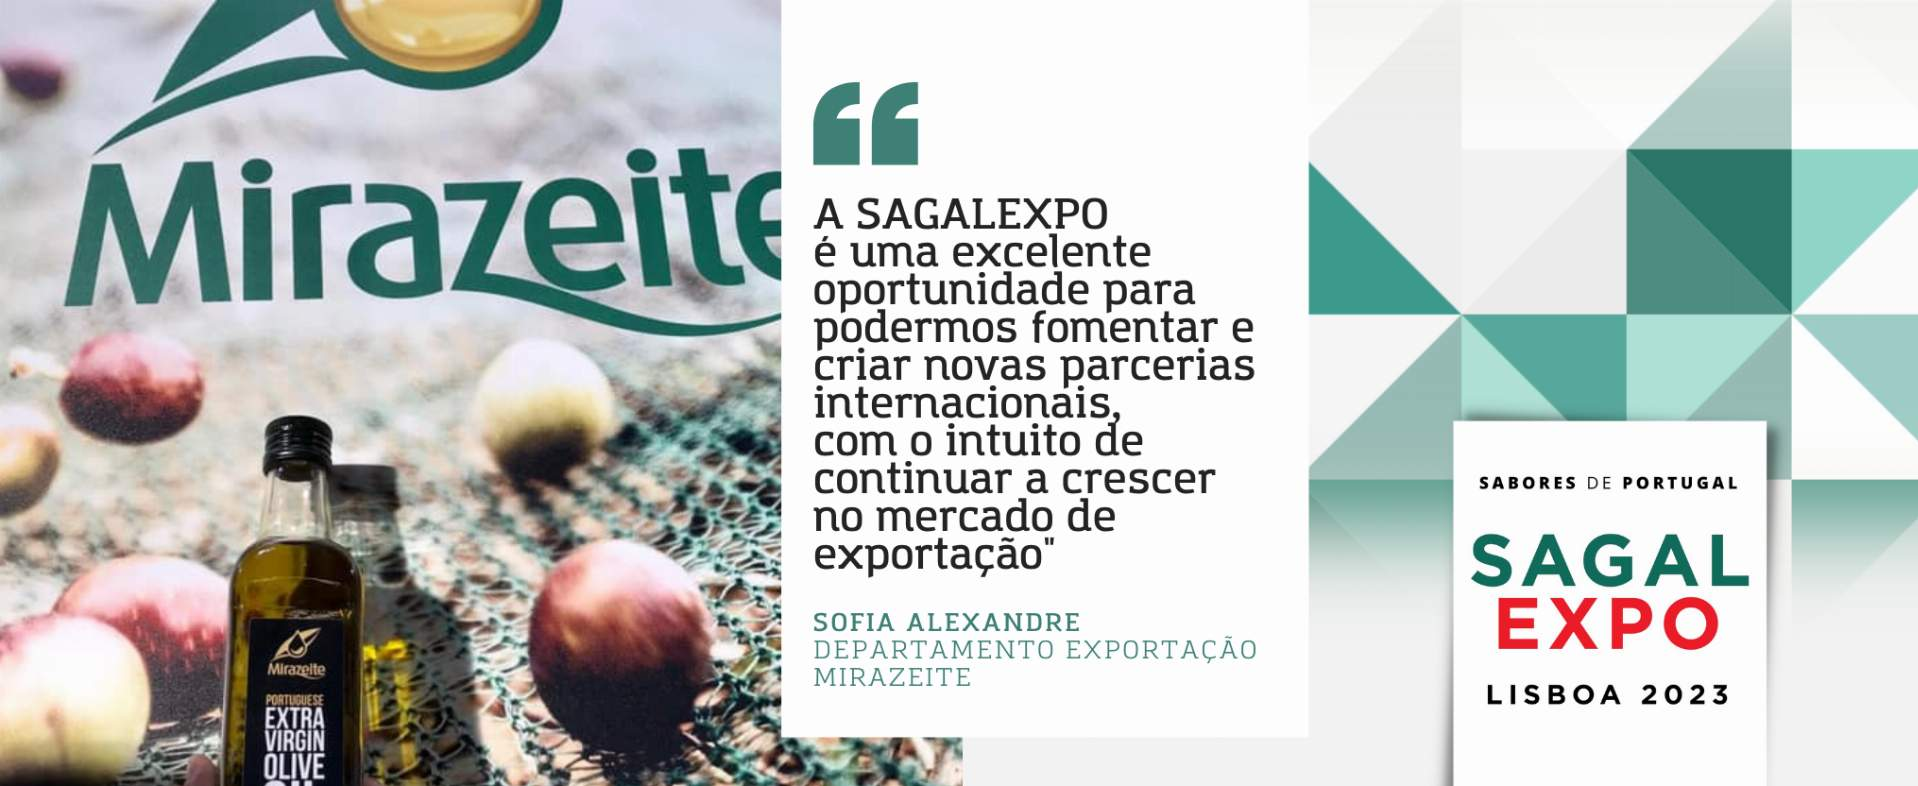 Mirazeite: “A SAGALEXPO é uma excelente oportunidade para podermos fomentar e criar novas parcerias internacionais, com o intuito de continuar a crescer no mercado de exportação"